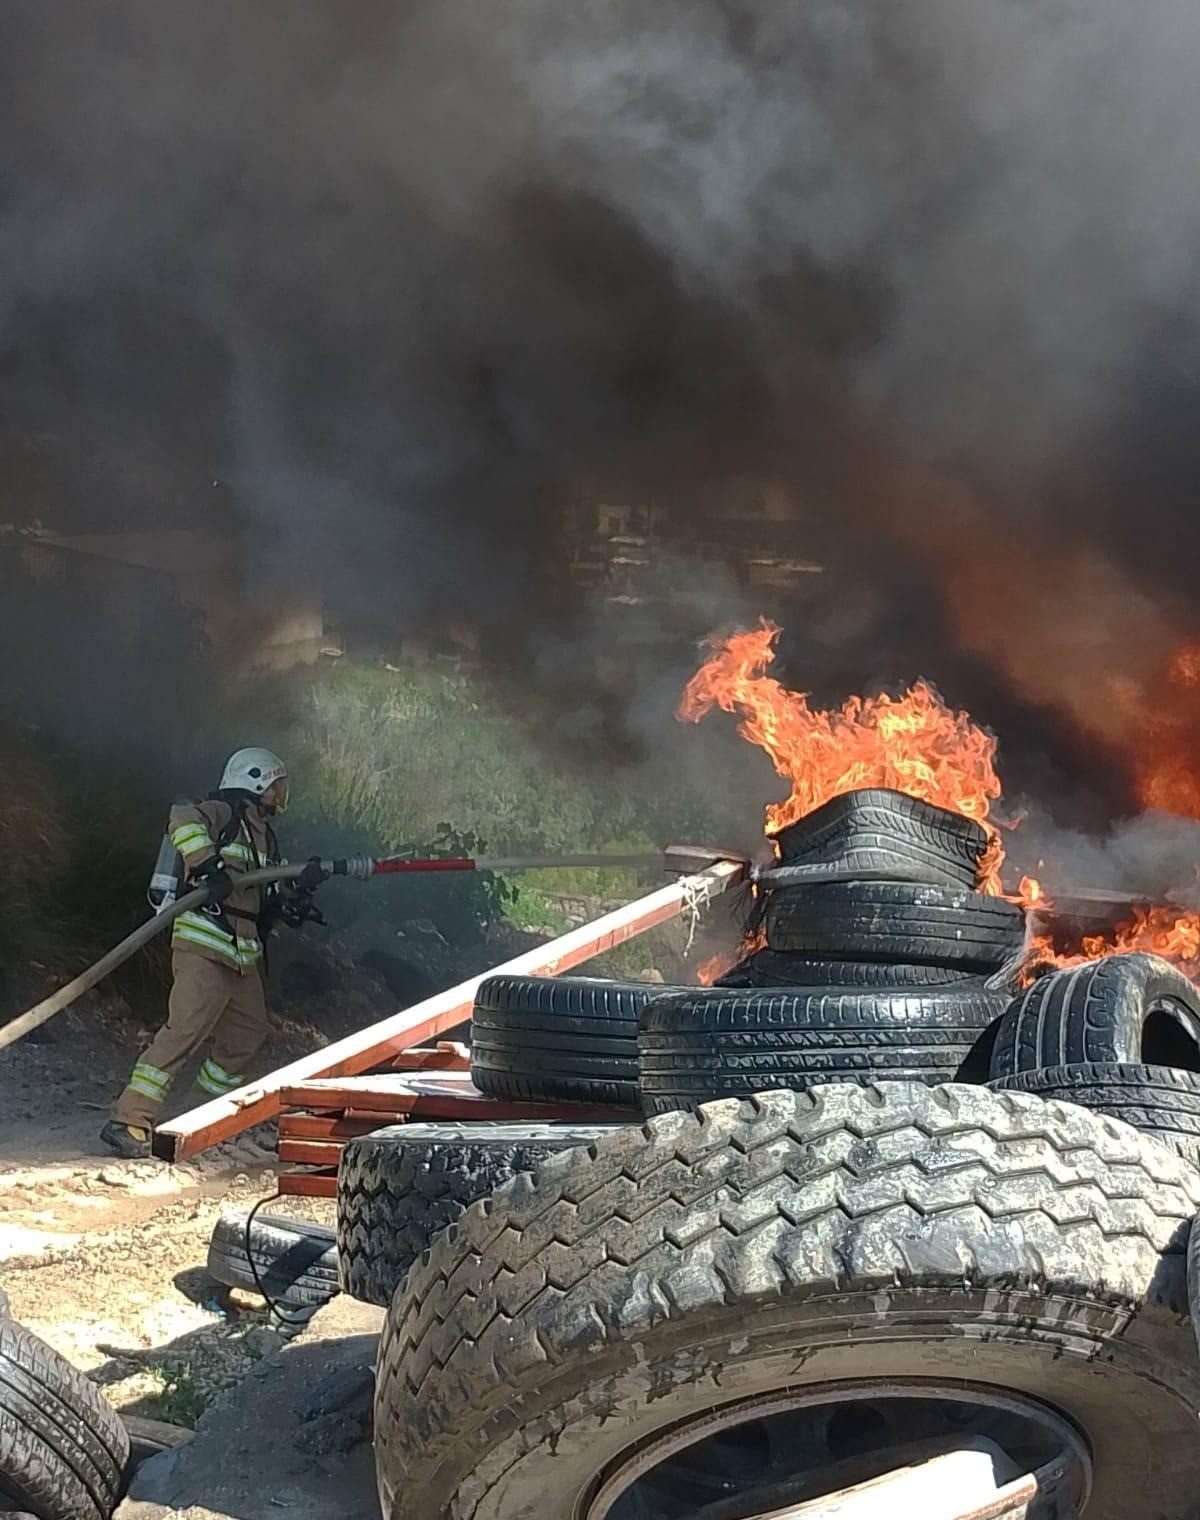 Defne ilçesi Orhanlı Mahallesi'nde bulunan bir lastik deposunda çıkan yangın, itfaiye ekiplerinin hızlı müdahalesiyle söndürüldü.